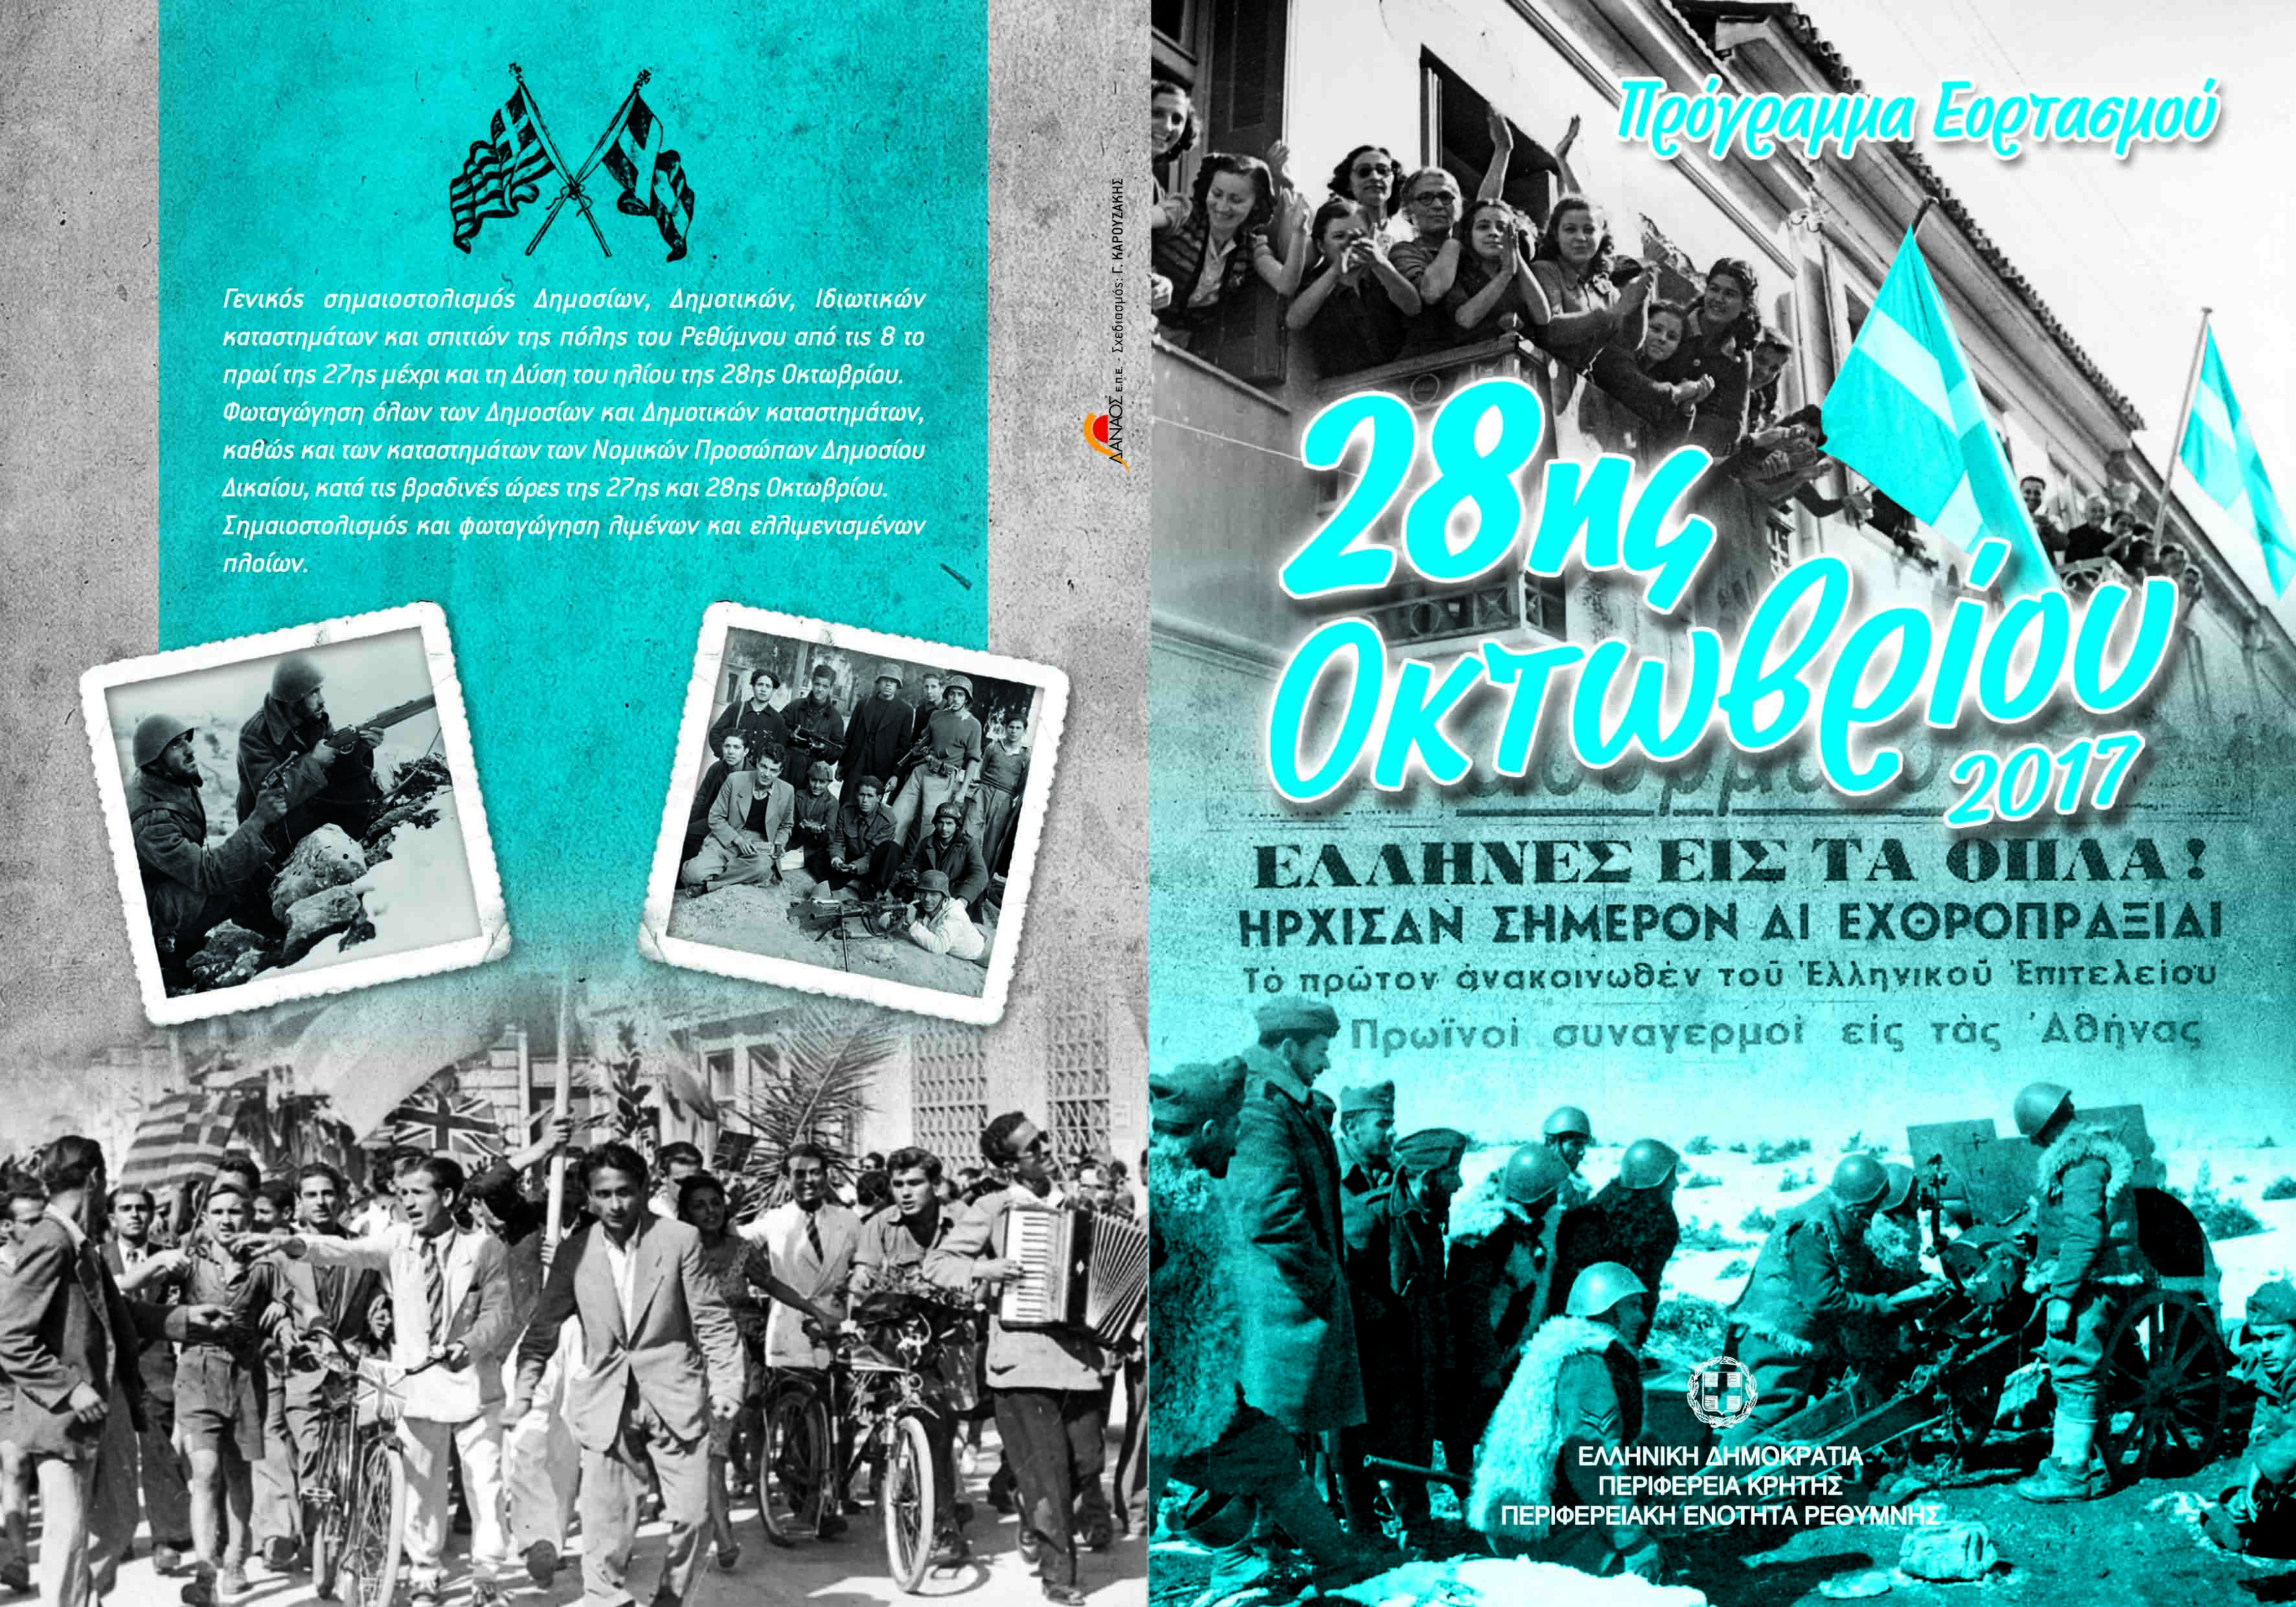 Το πρόγραμμα Εορτασμού της 28ης Οκτωβρίου 2017 στο Ρέθυμνο